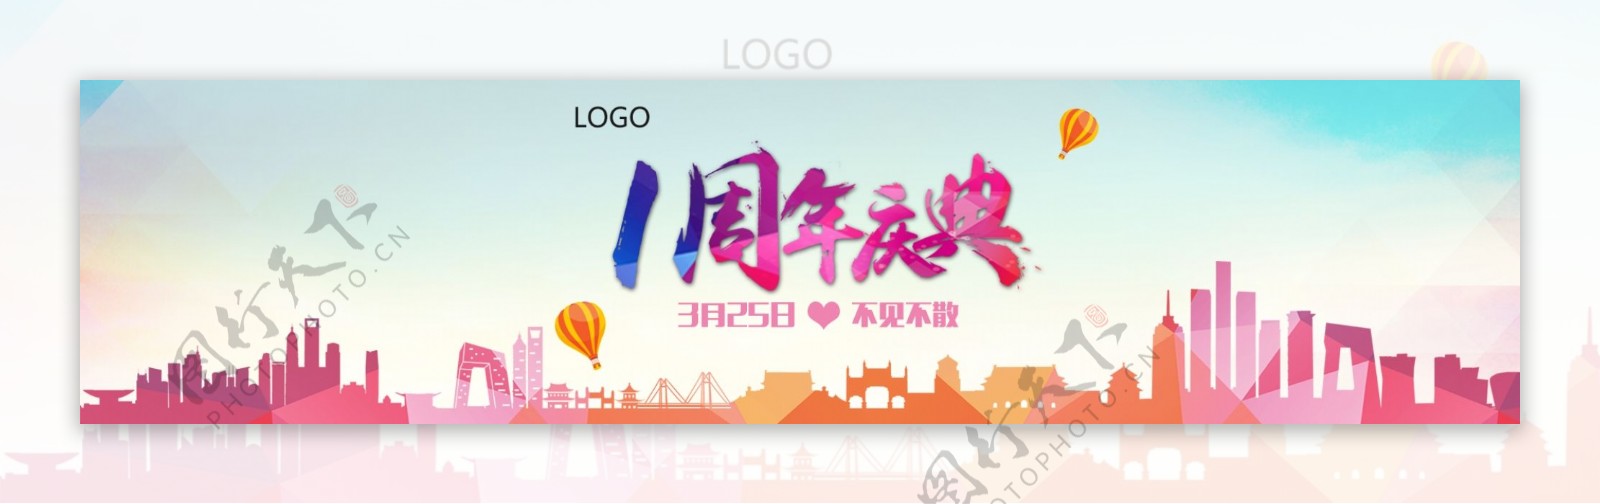 企业周年庆网站banner